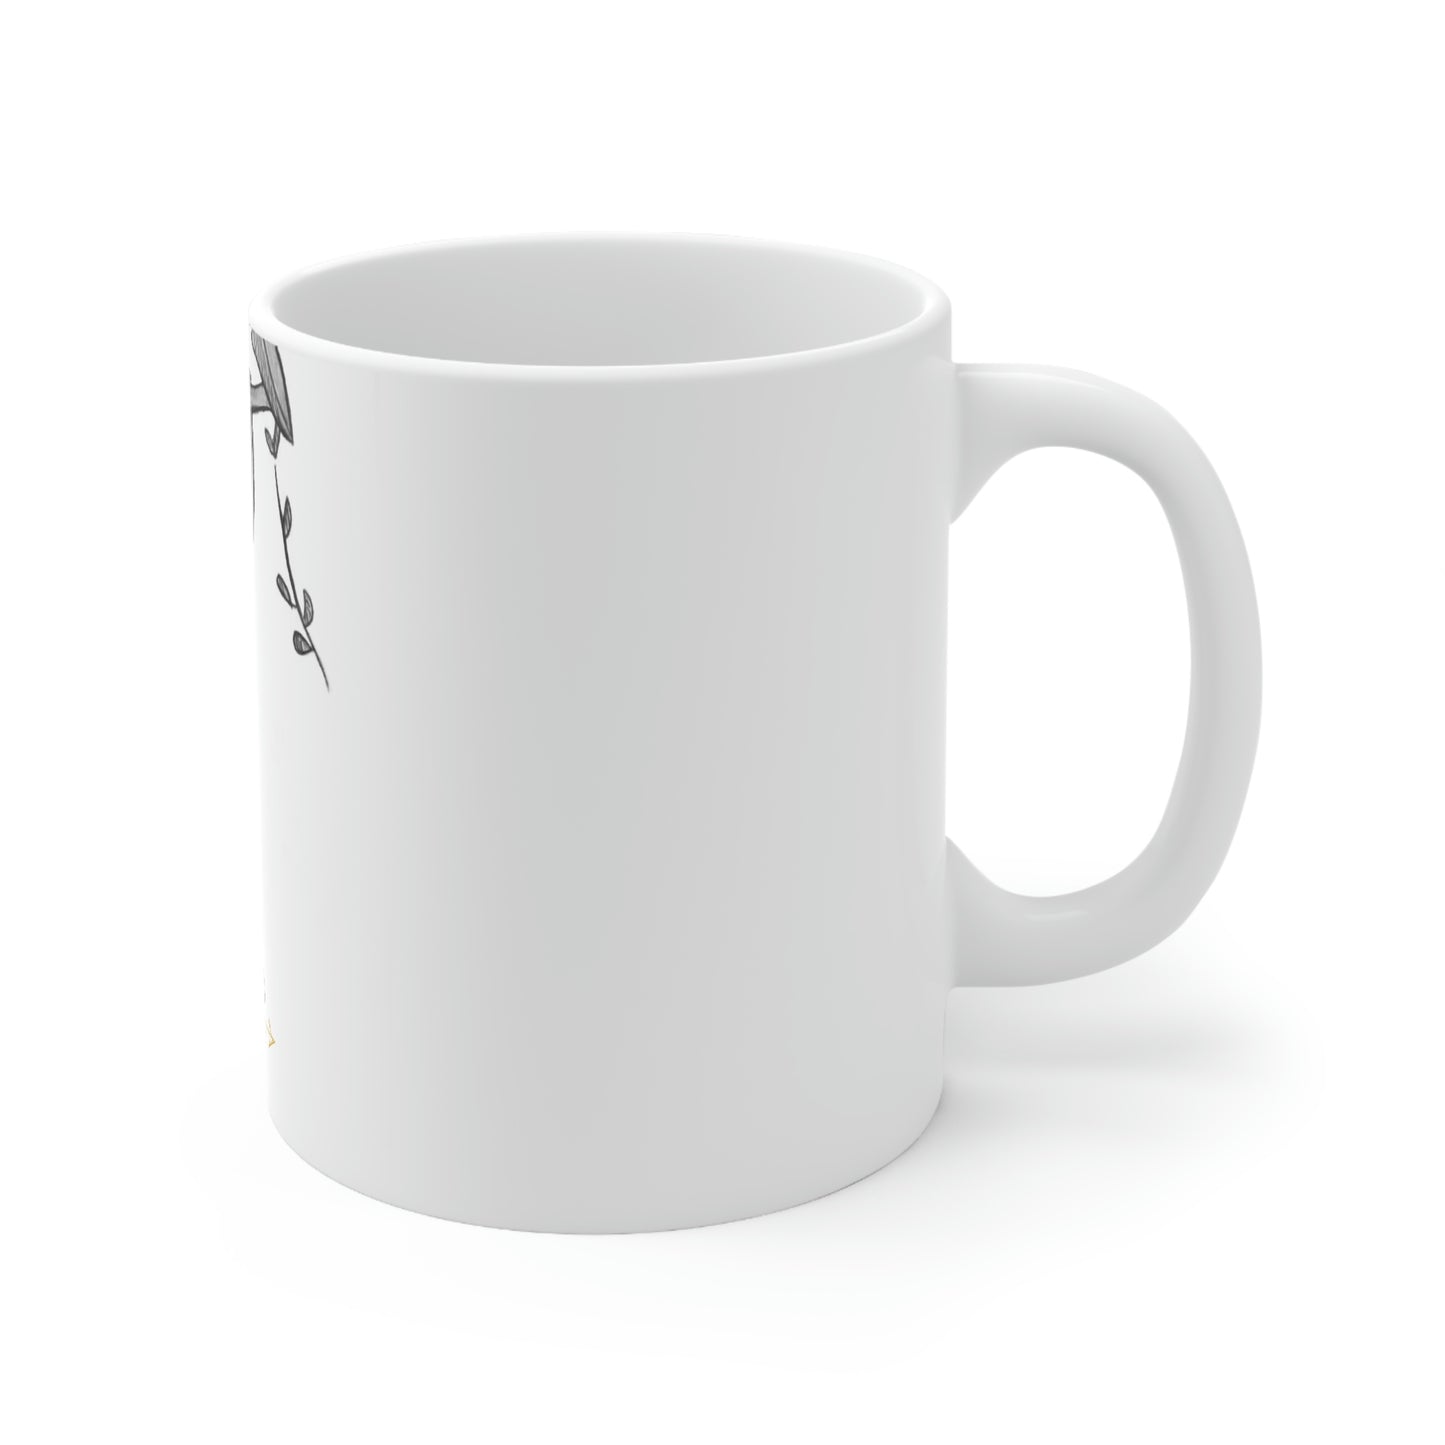 Sloth Ceramic Mug 11oz